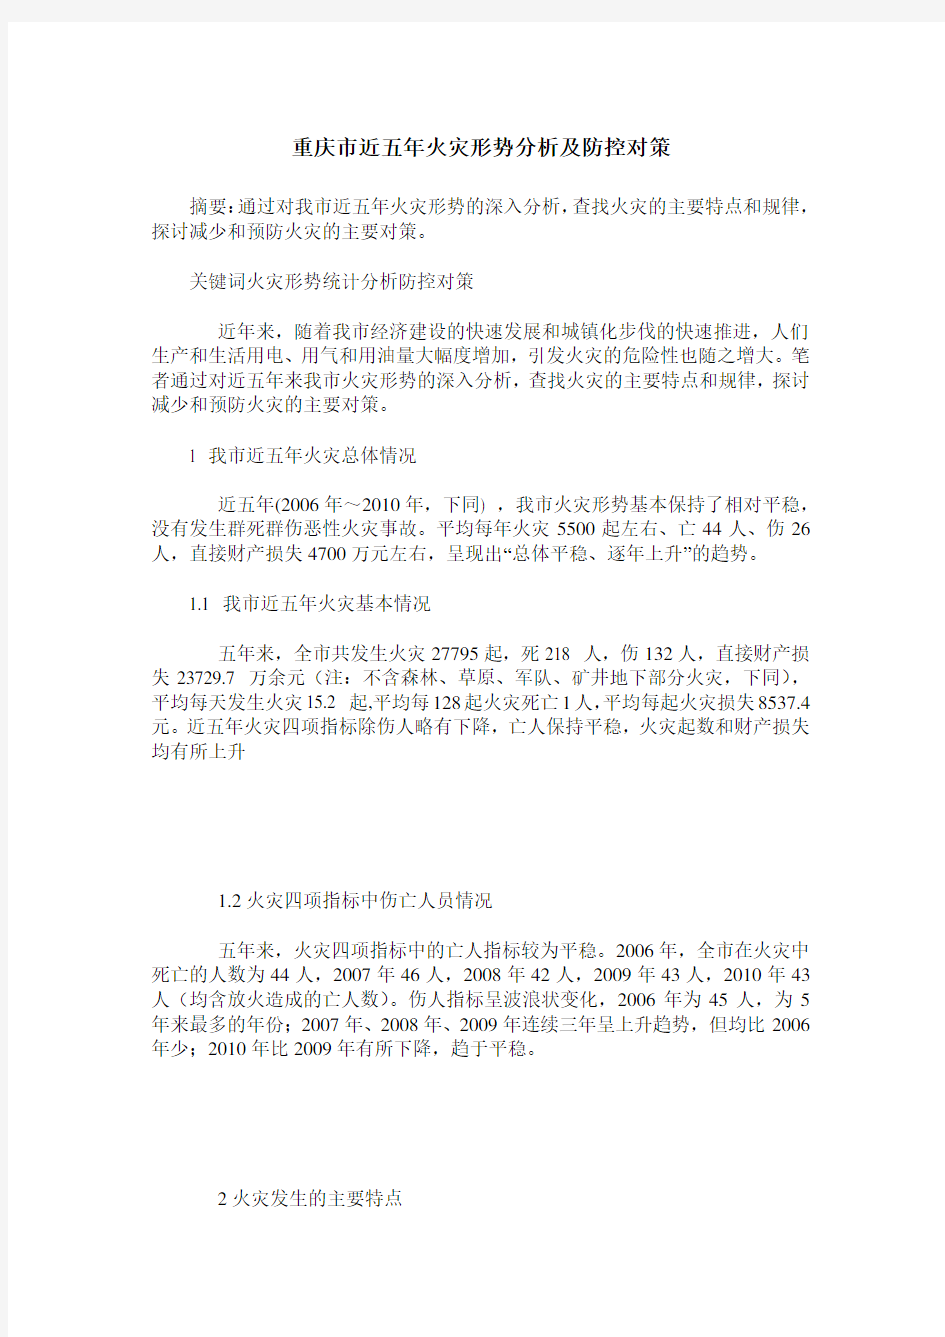 重庆市近五年火灾形势分析及防控对策